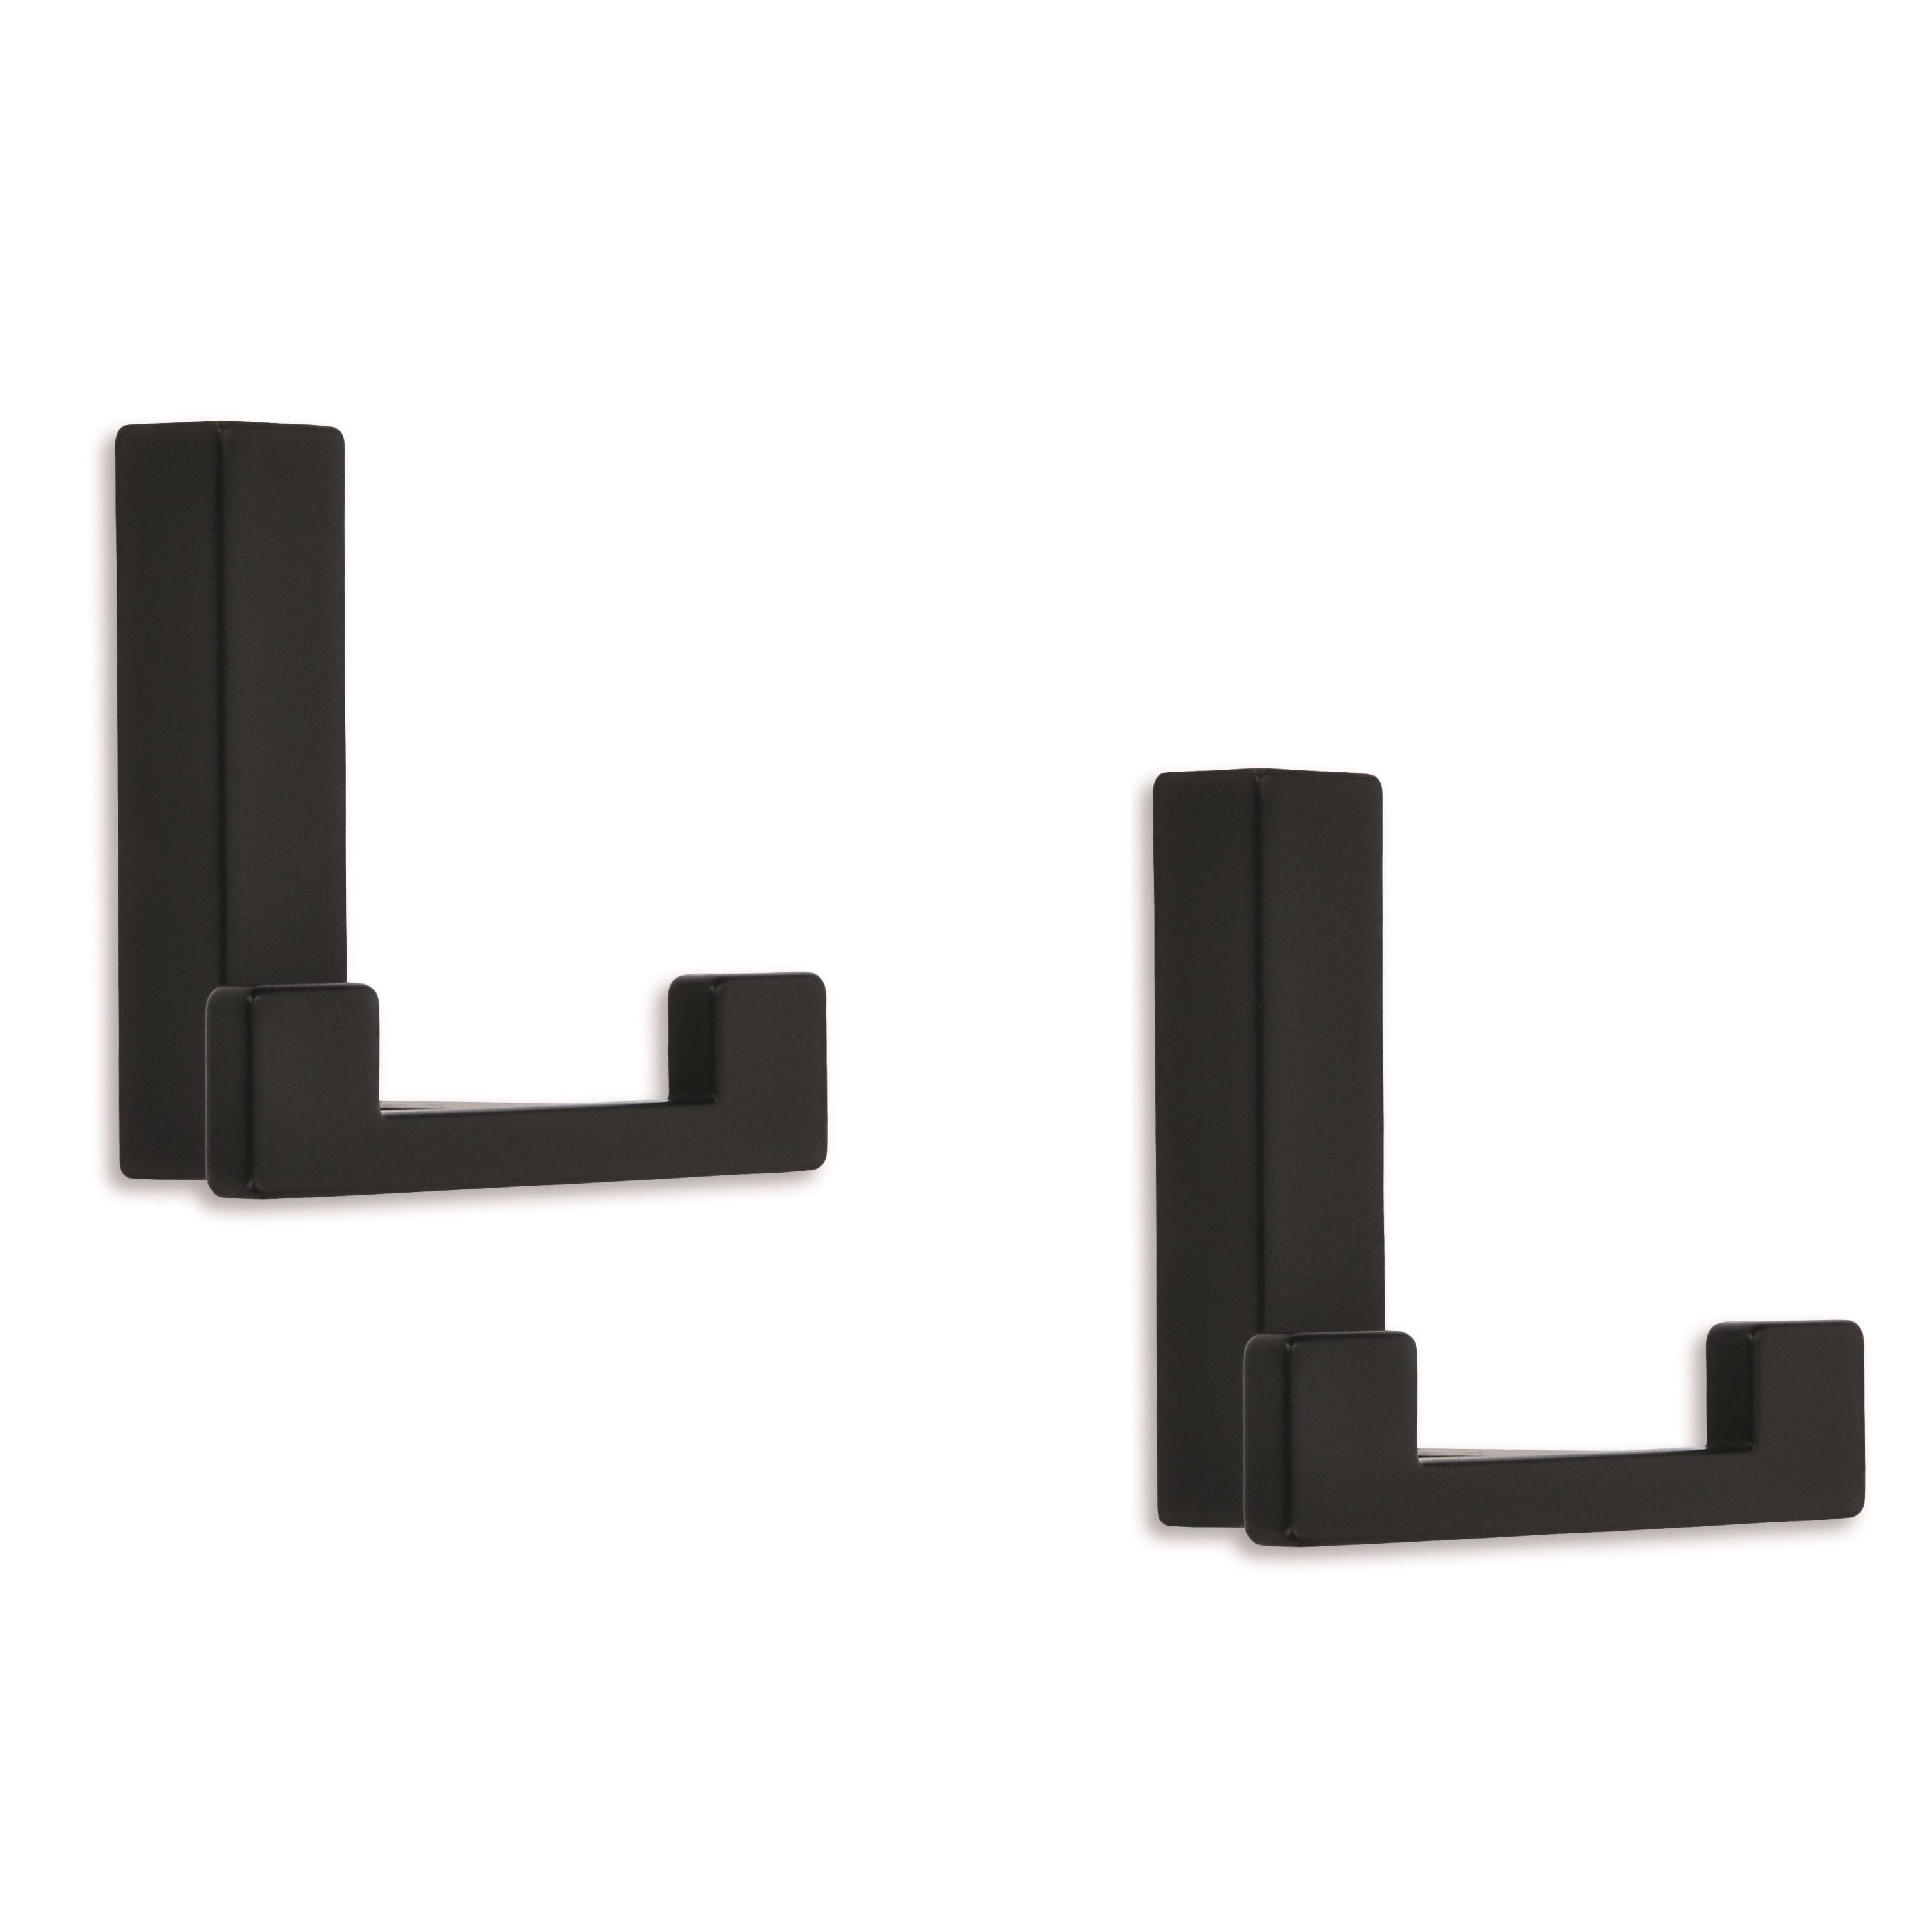 6x Luxe kapstokhaken-jashaken-kapstokhaakjes metaal modern zwart dubbele haak 4 x 6,1 cm